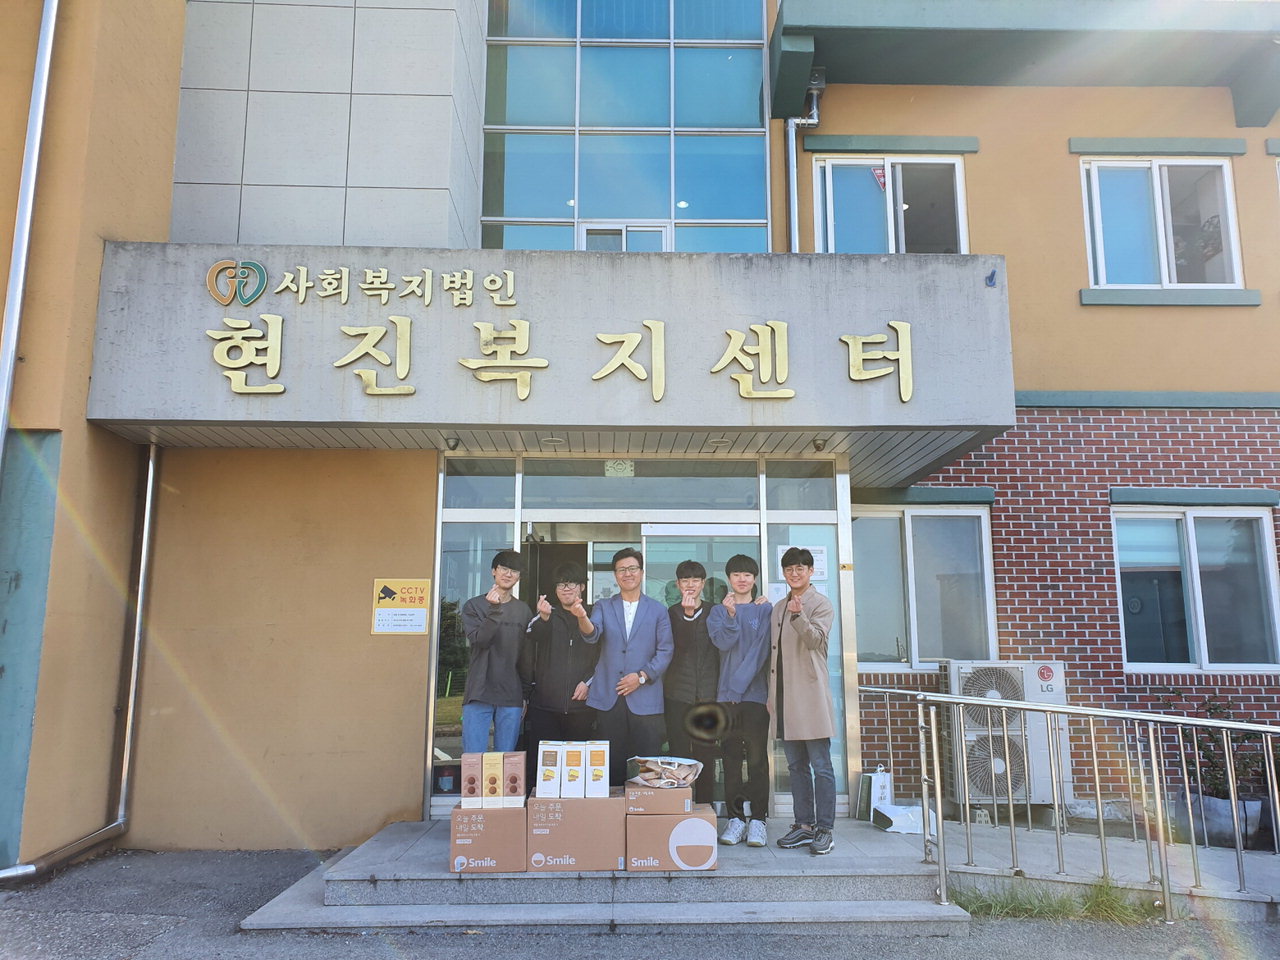 충북고등학교 2학년 6반 학생들이 19일 지역 아동복지시설 '늘푸른 아동원'을 방문해 바자회 수익금으로 마련한 생필품과 간식을 전달했다.  / 충북고등학교 제공